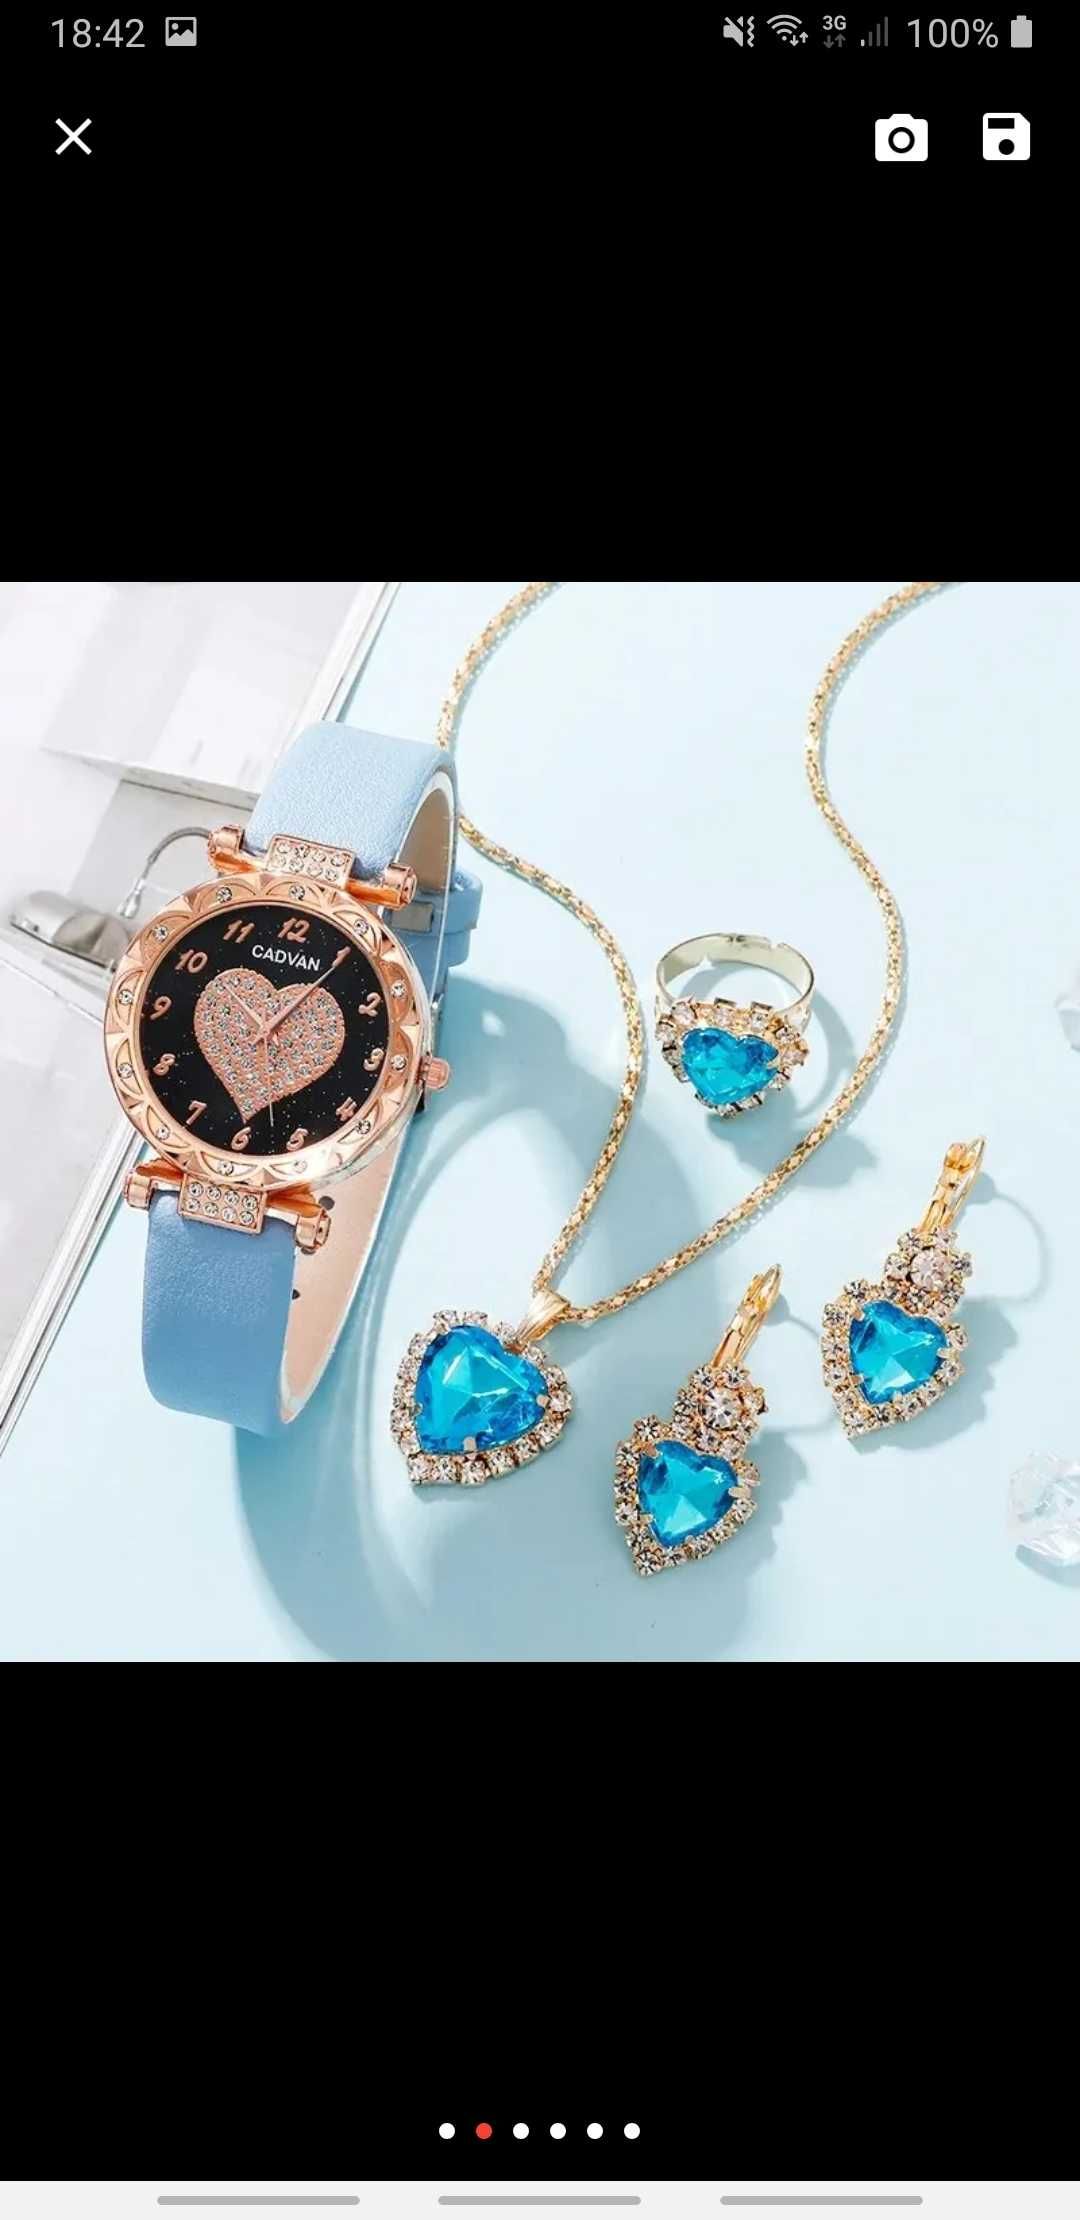 Zegarek damski + Piękny zestaw biżuterii